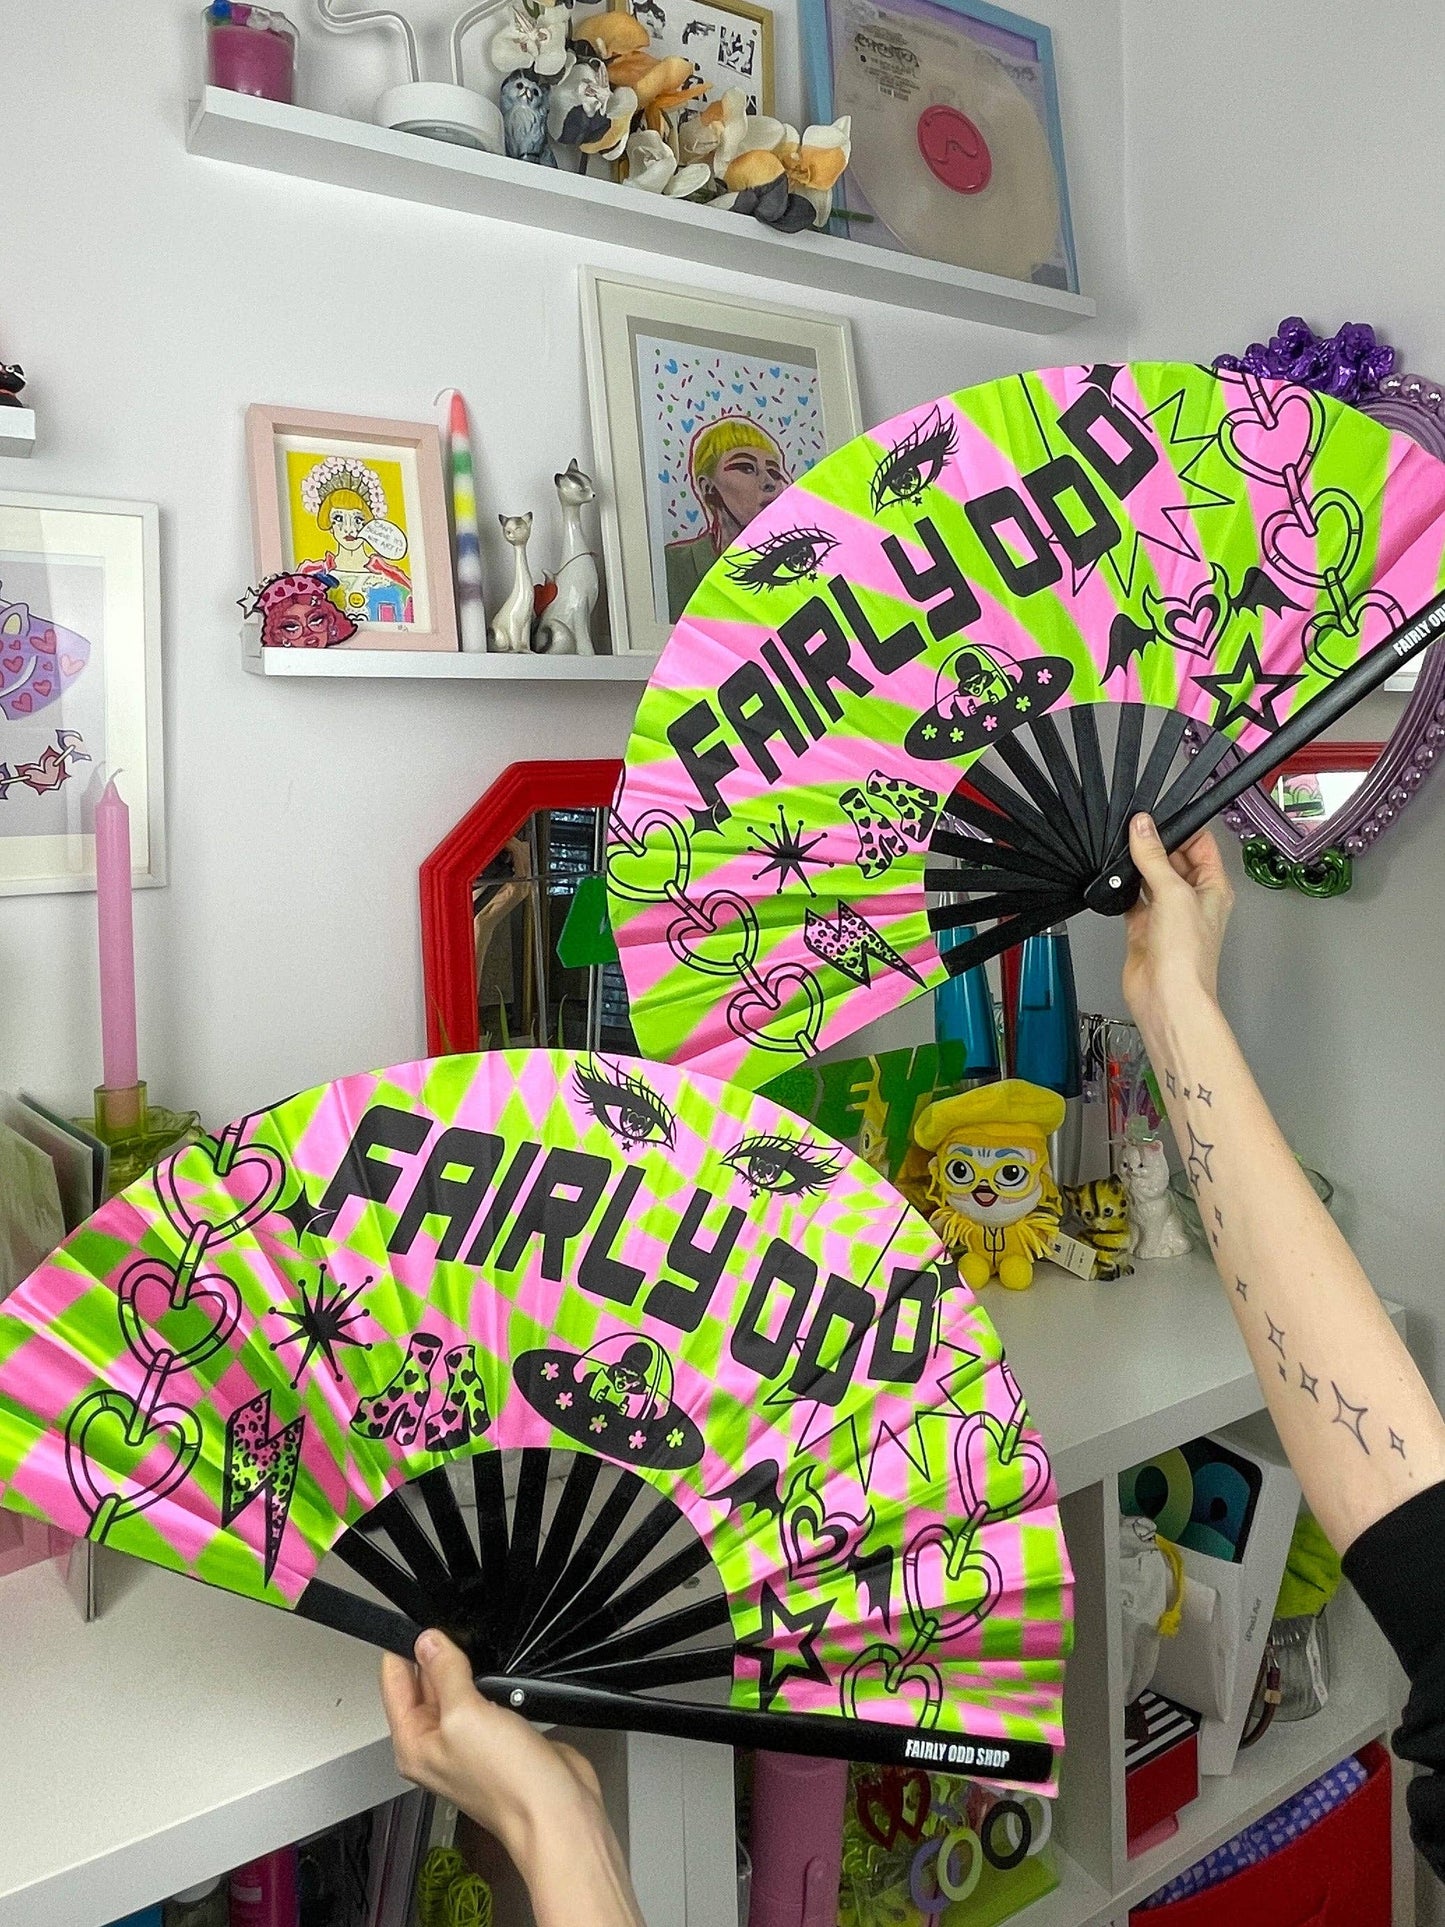 Fairly Odd Shop - Fairly Odd Fan!